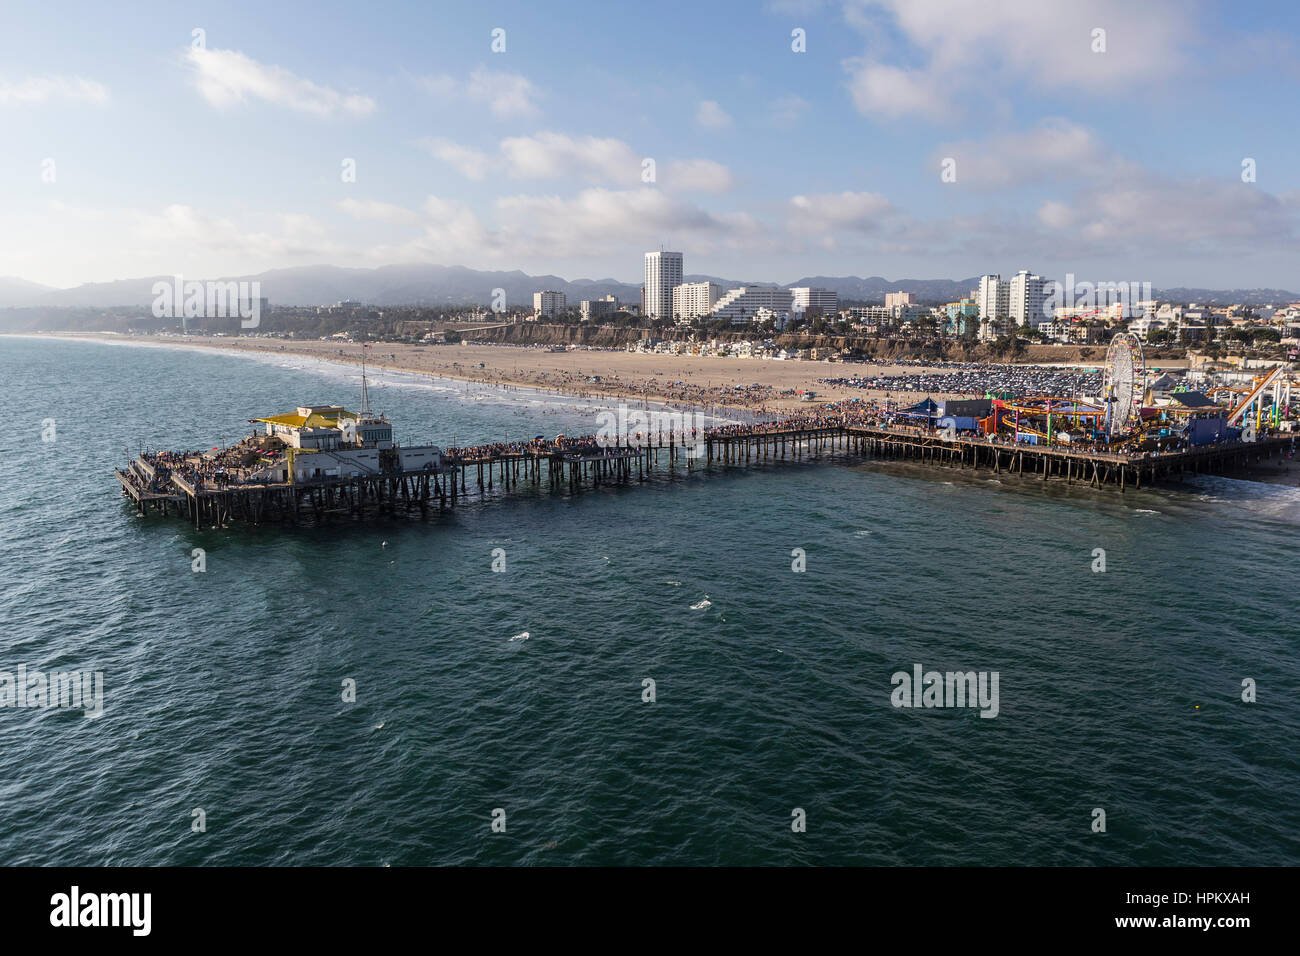 Santa Monica, Californie, USA - 6 août 2016 : Vue aérienne de l'océan Pacifique et populaire la jetée de Santa Monica, près de Los Angeles. Banque D'Images